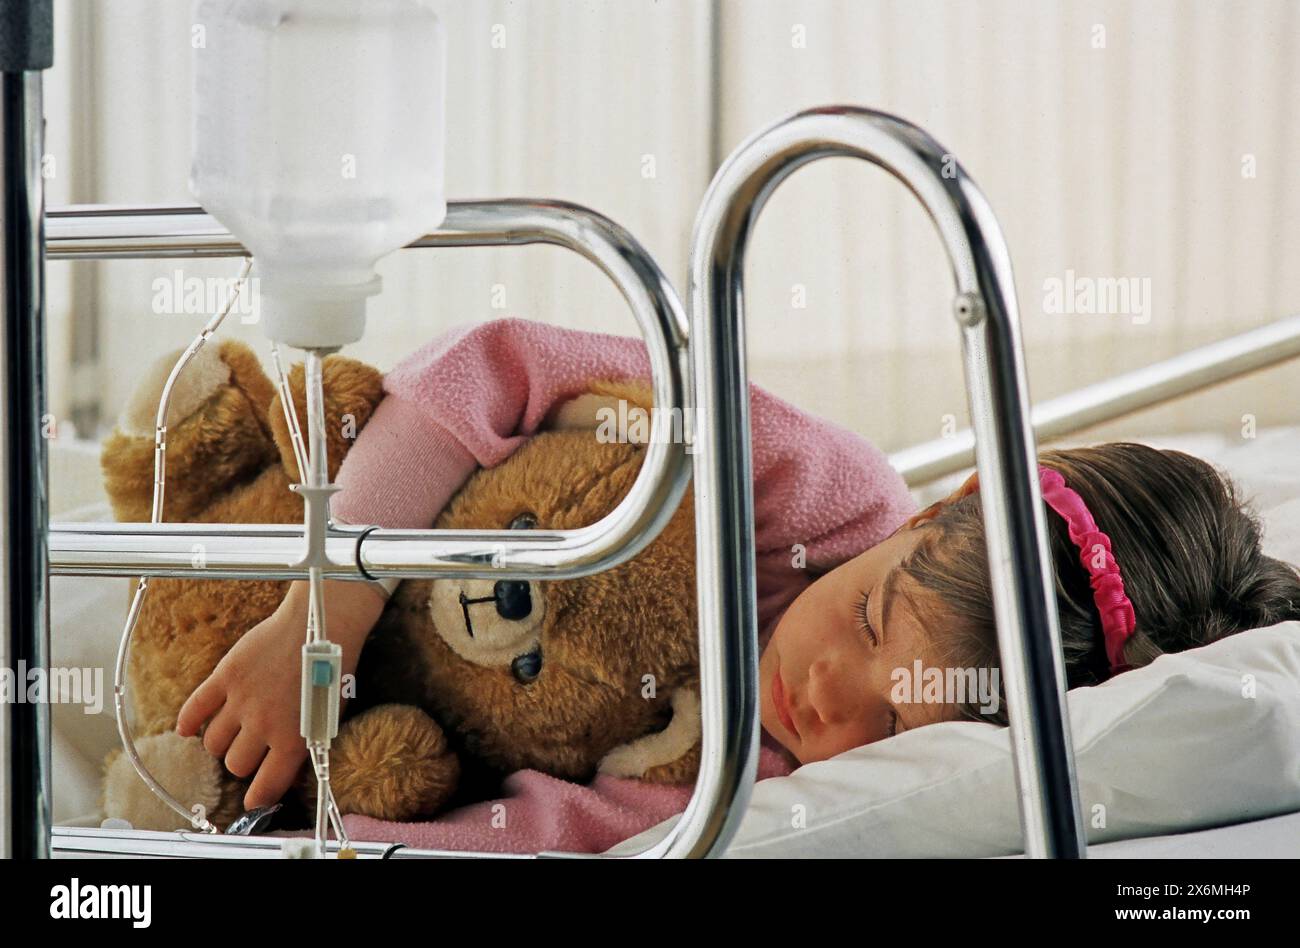 Una giovane ragazza dorme tranquillamente in un letto d'ospedale, confortata da un orsacchiotto al suo fianco. La ragazza sembra riposare pacificamente Foto Stock